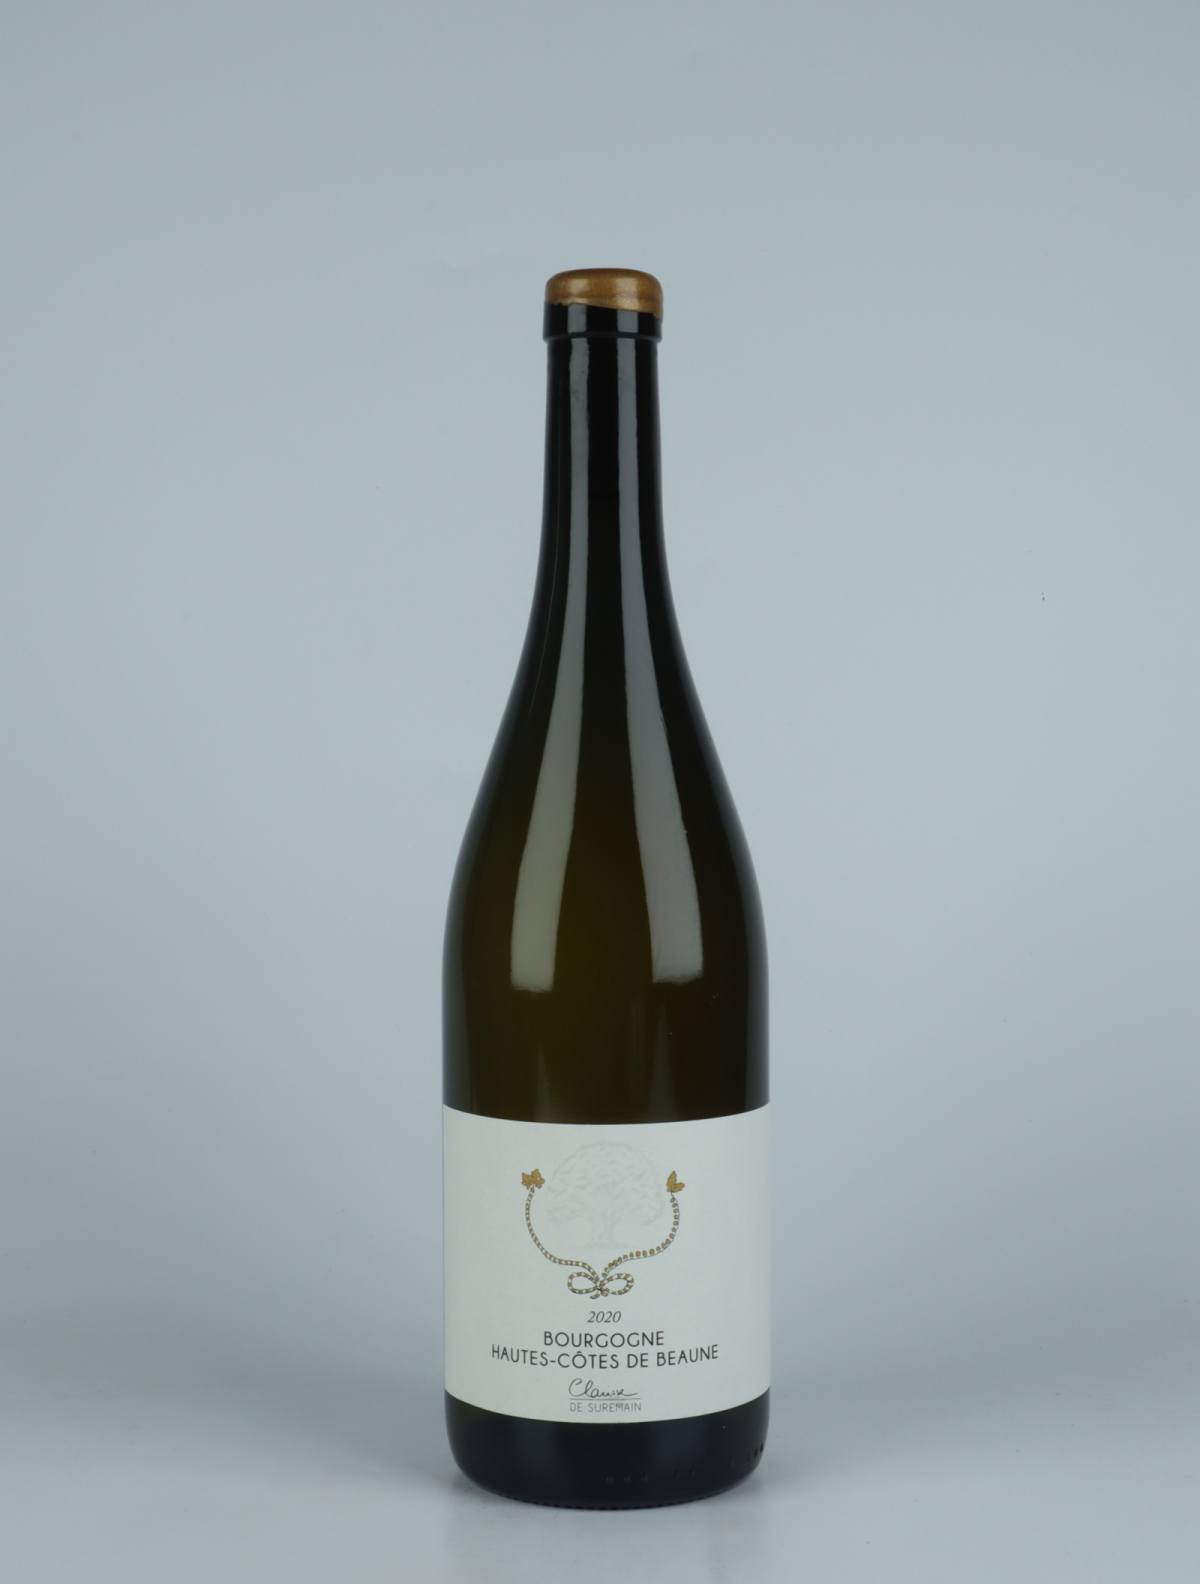 A bottle 2020 Hautes-Côtes de Beaune Blanc White wine from Clarisse de Suremain, Burgundy in France